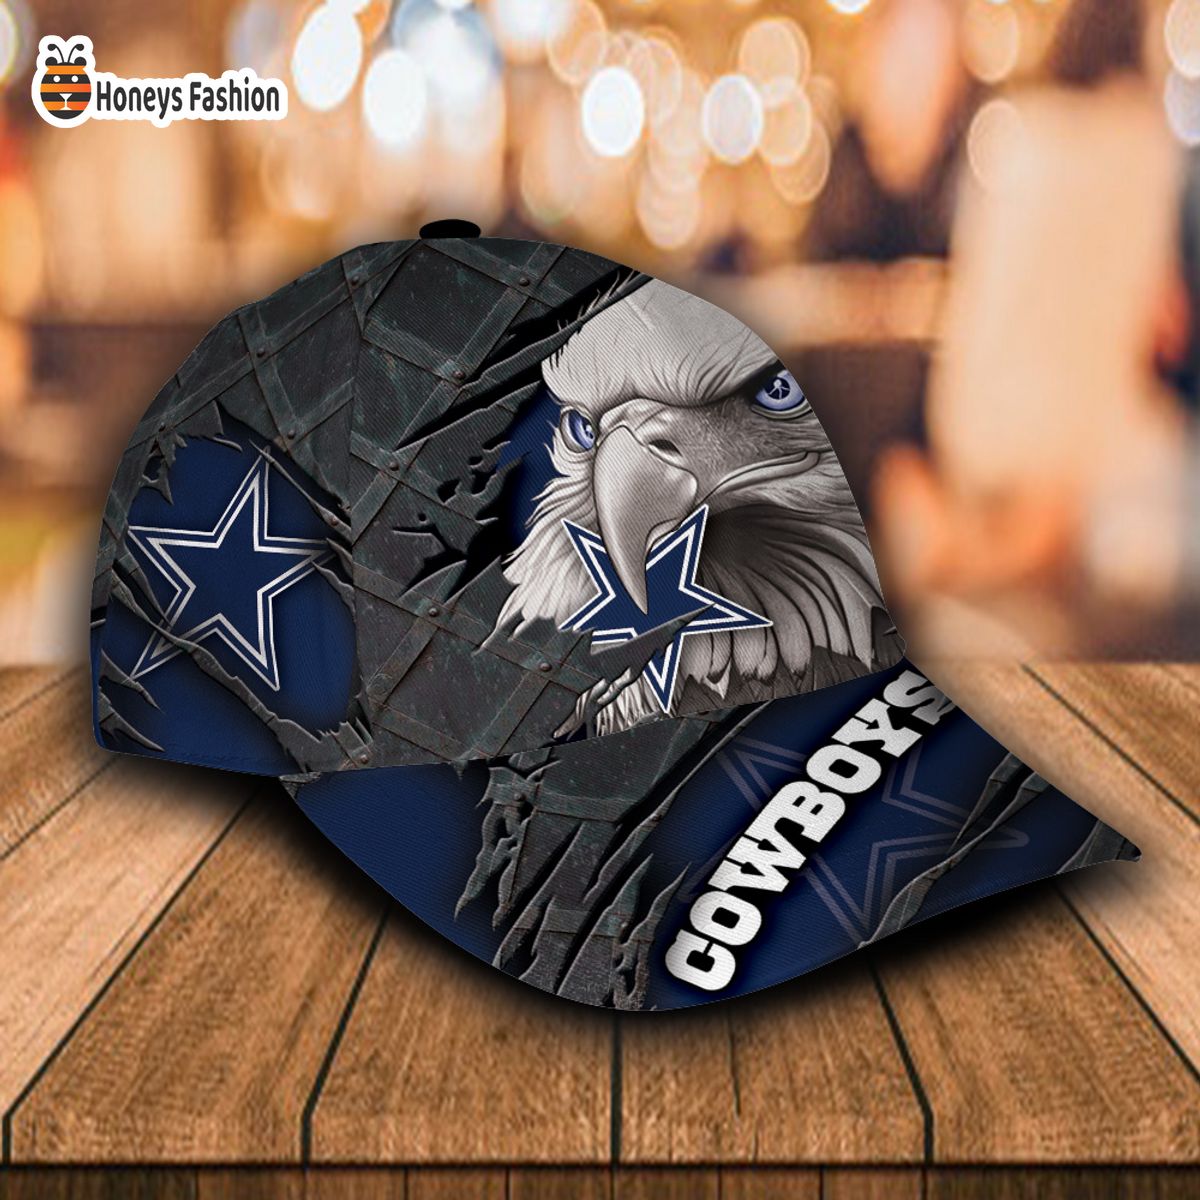 Dallas Cowboys NFL Eagle Custom Name Classic Cap